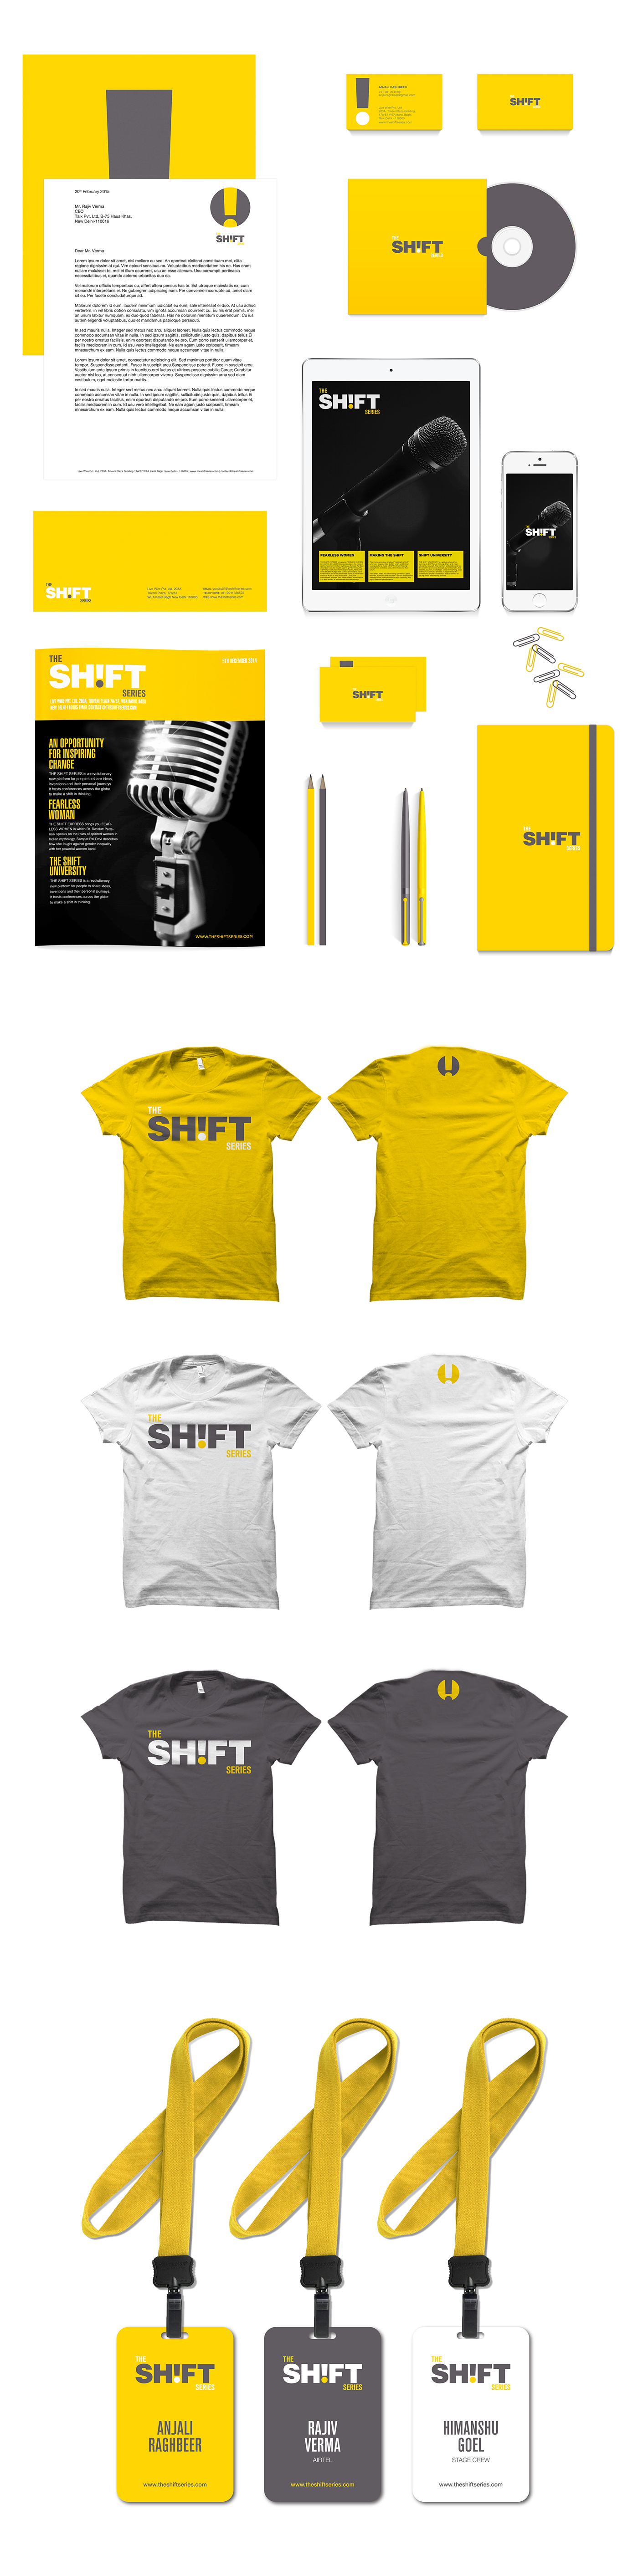 The Shift Series branding  design